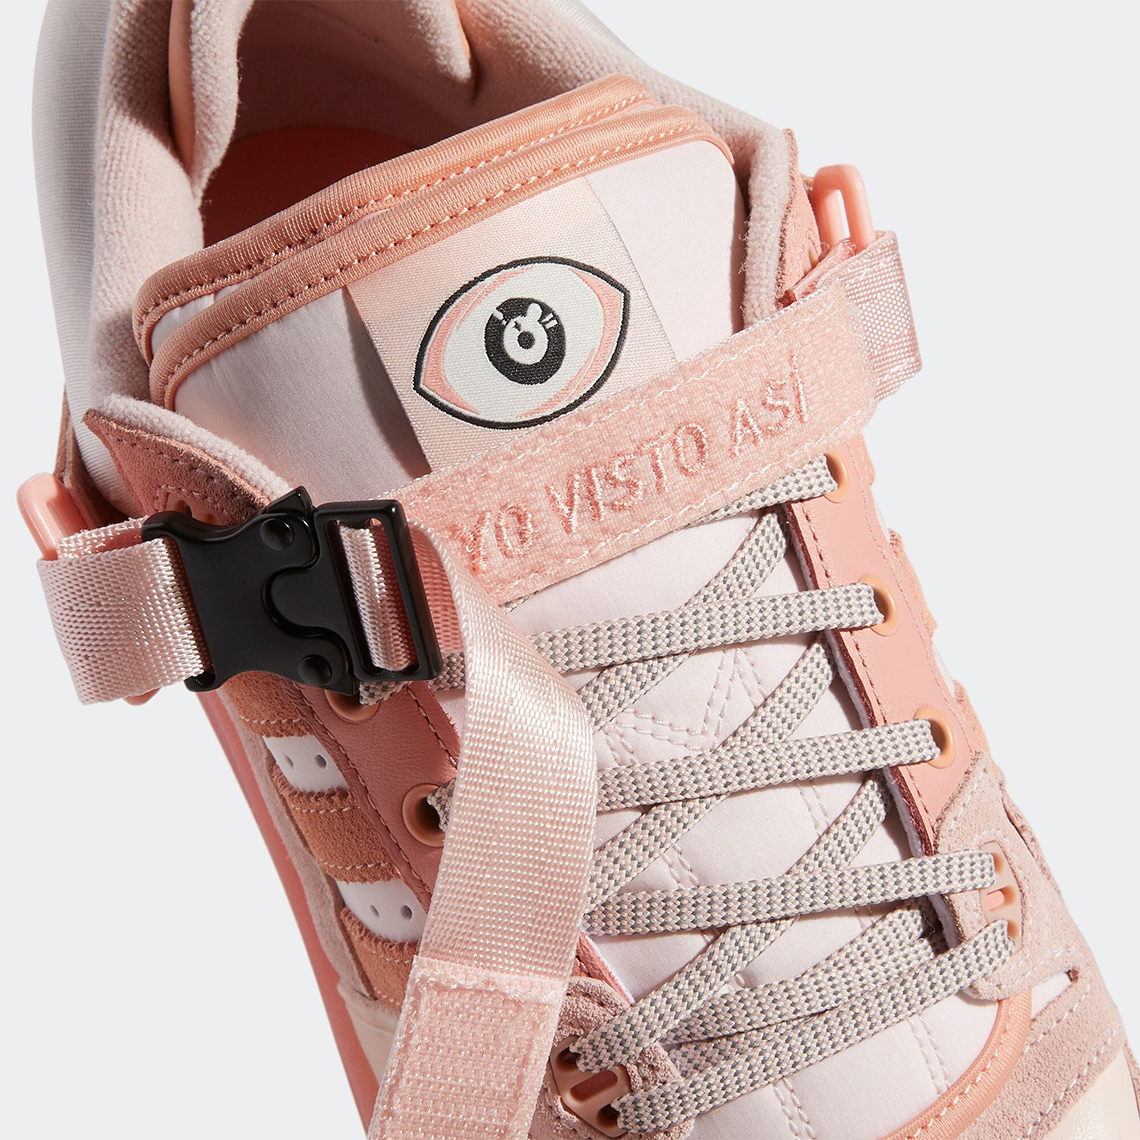 bad bunny adidas den forum buckle low pink gw0265 5